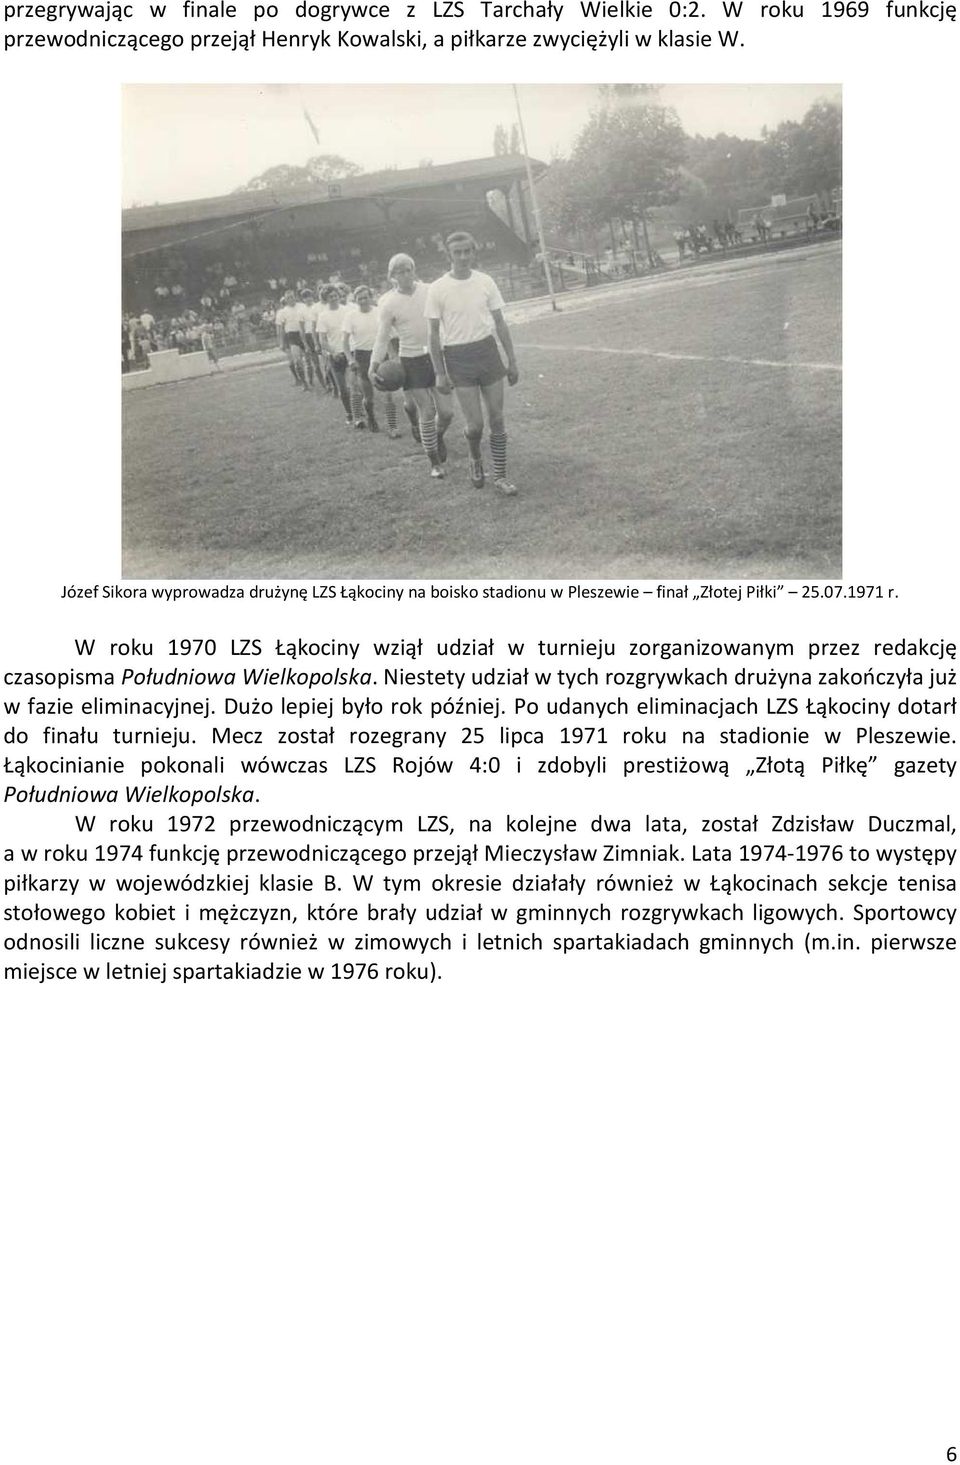 W roku 1970 LZS Łąkociny wziął udział w turnieju zorganizowanym przez redakcję czasopisma Południowa Wielkopolska. Niestety udział w tych rozgrywkach drużyna zakończyła już w fazie eliminacyjnej.